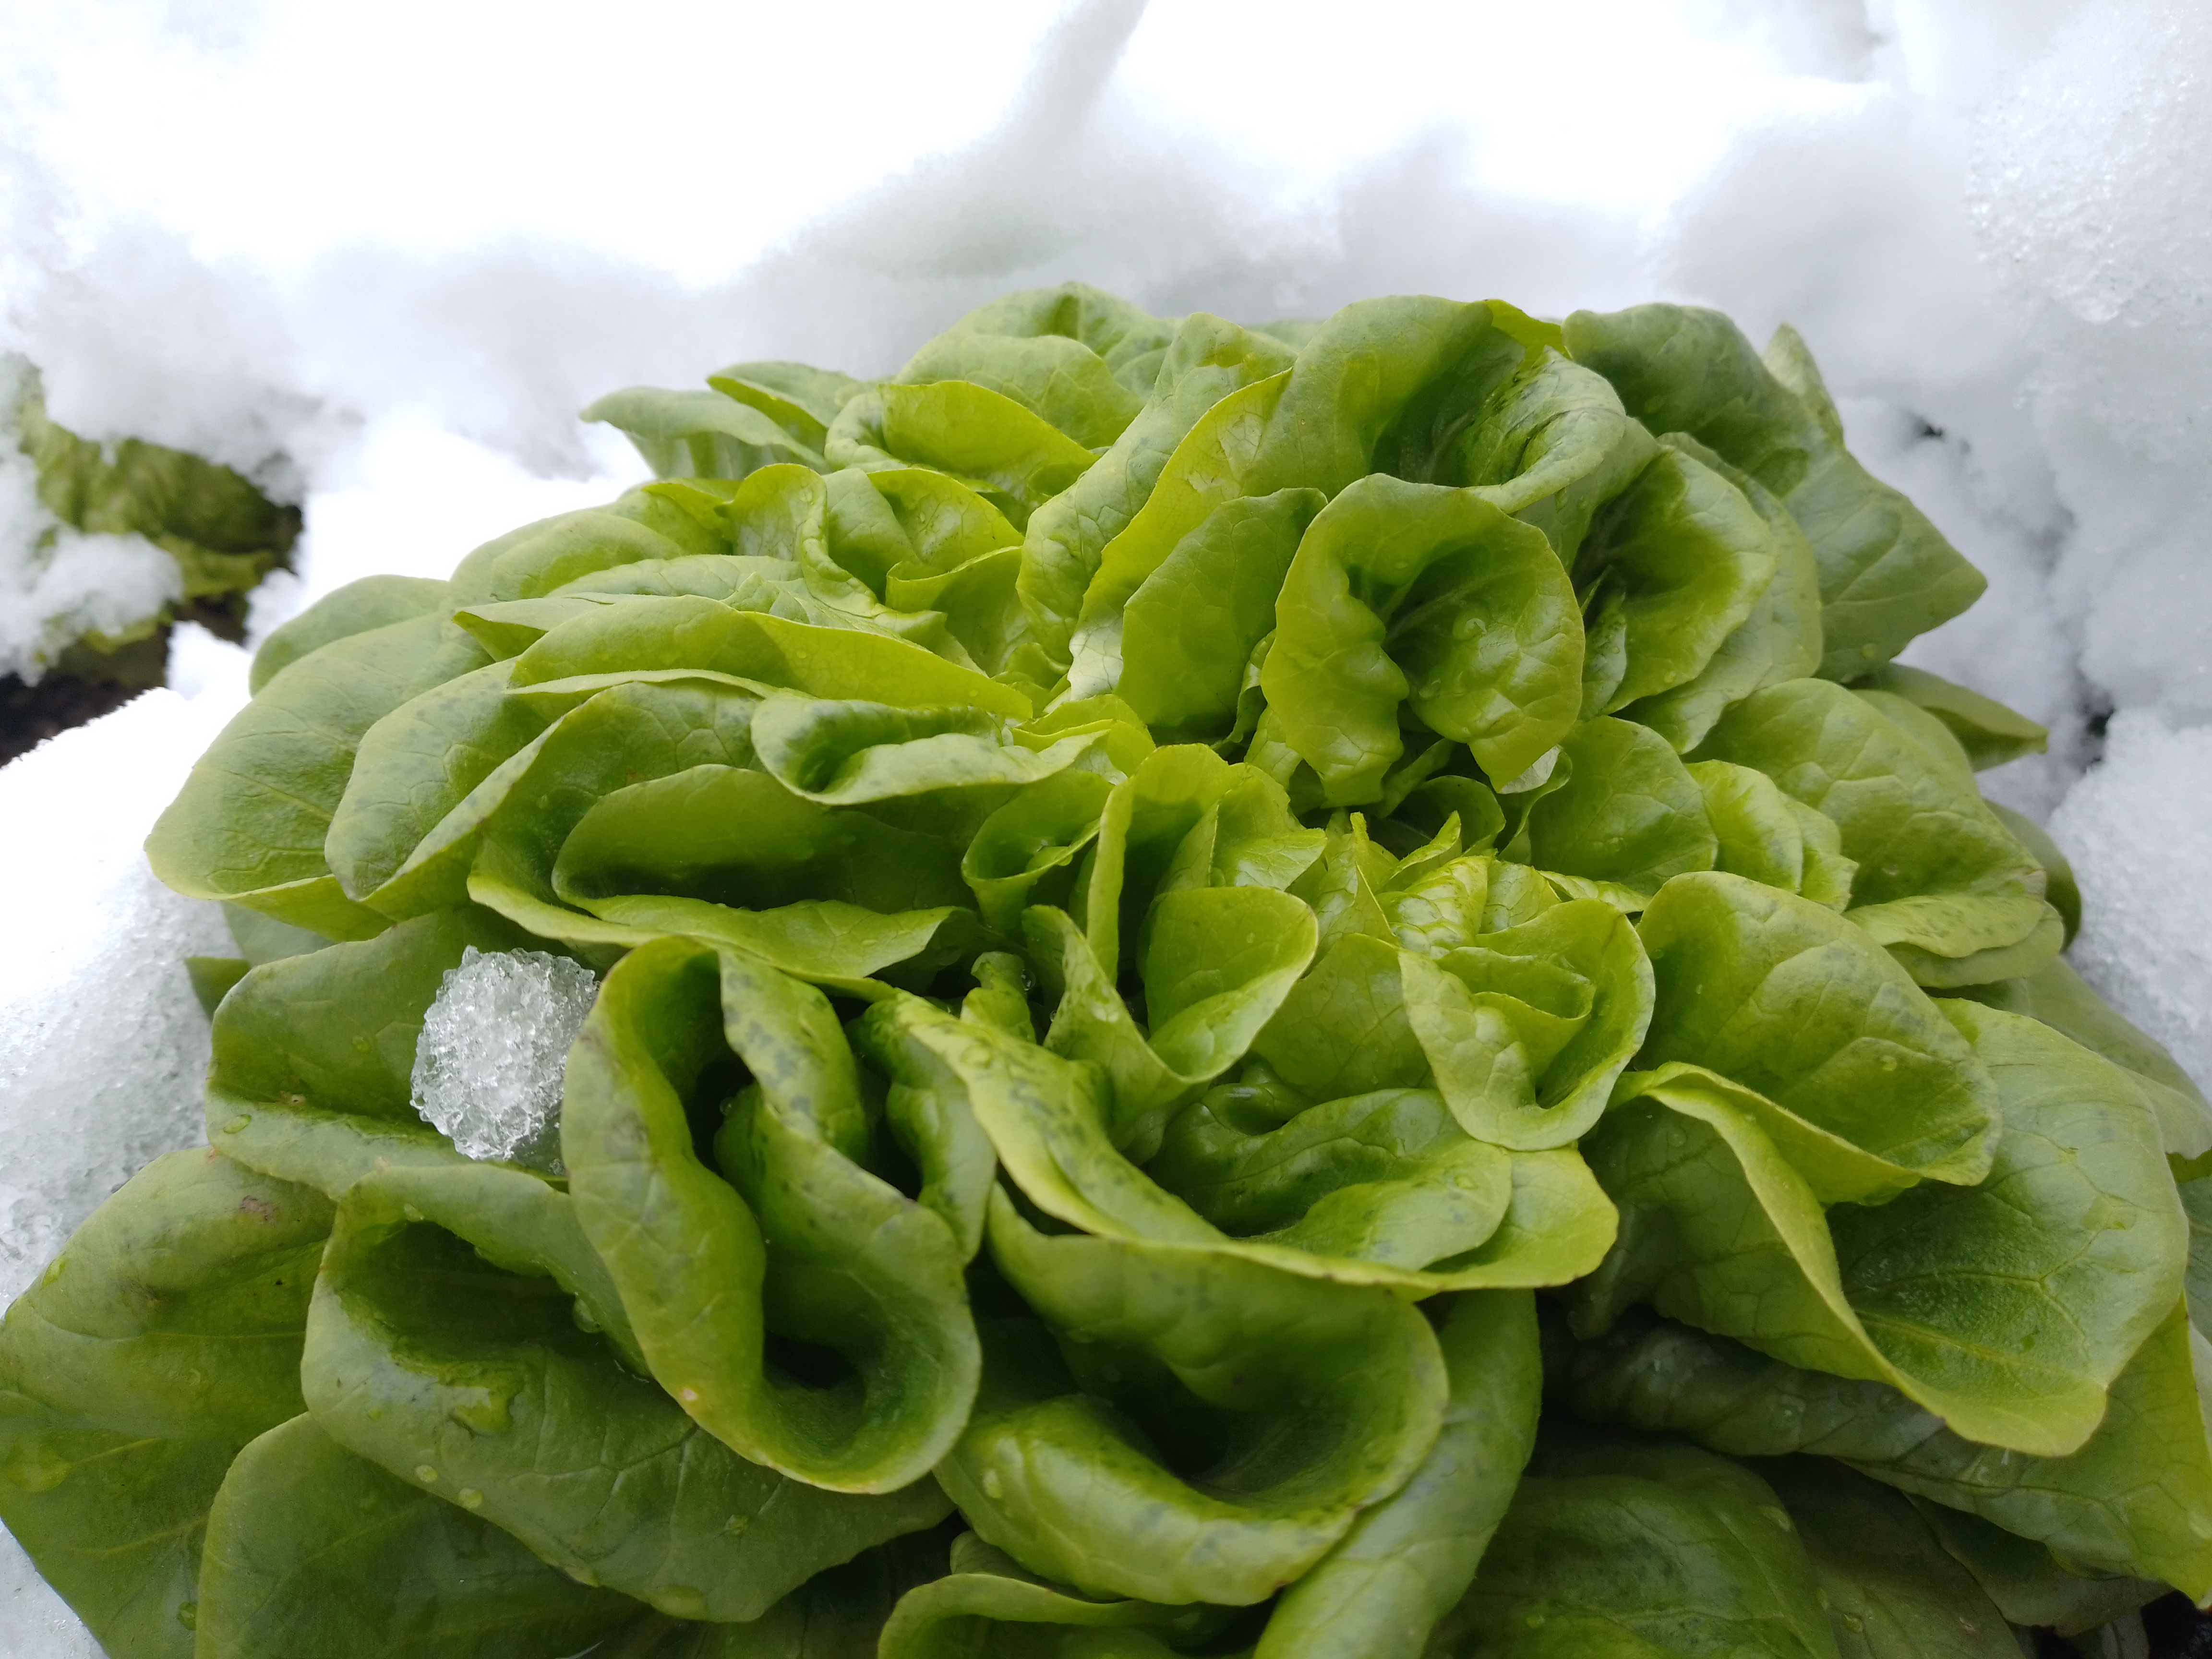 Viele Gemüsearten, so auch der Gartensalat, sind frostfester als landläufig angenommen. Sie können im Winter mit einfachen Mitteln kultiviert und beerntet werden.